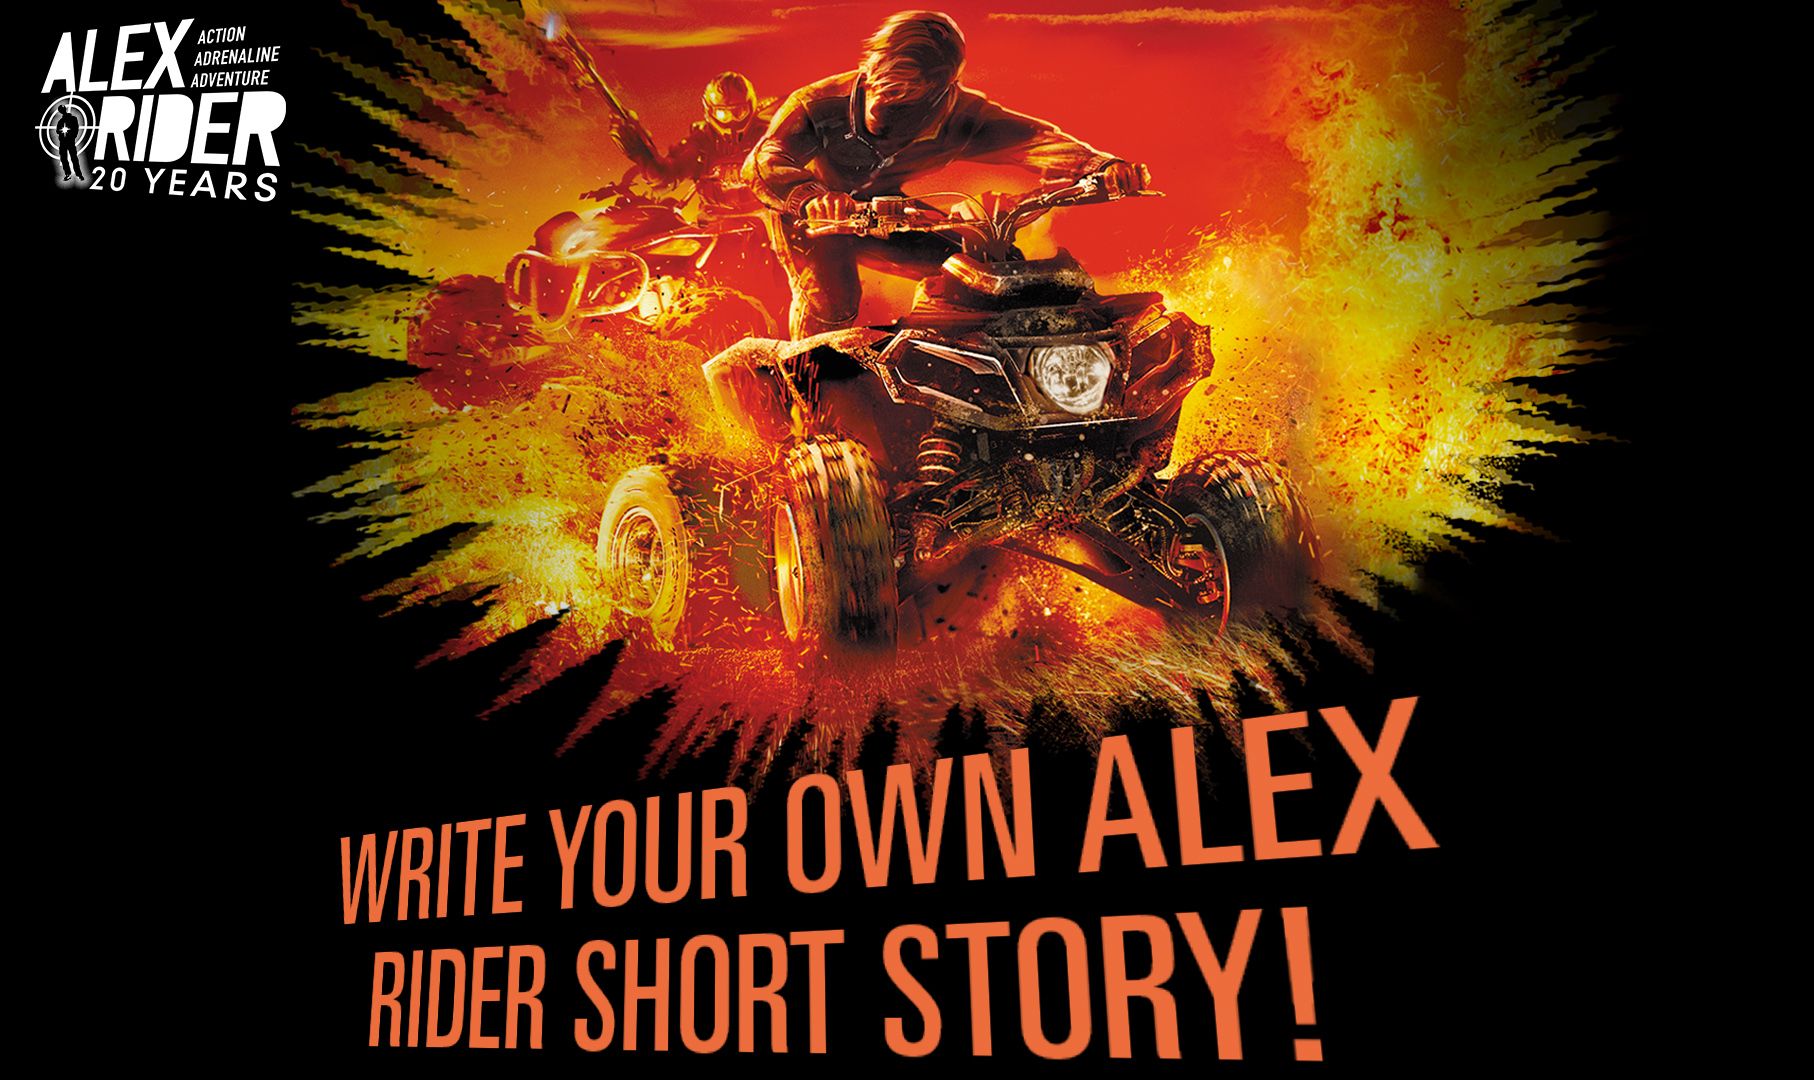 Alex Rider Adrenaline Adventure